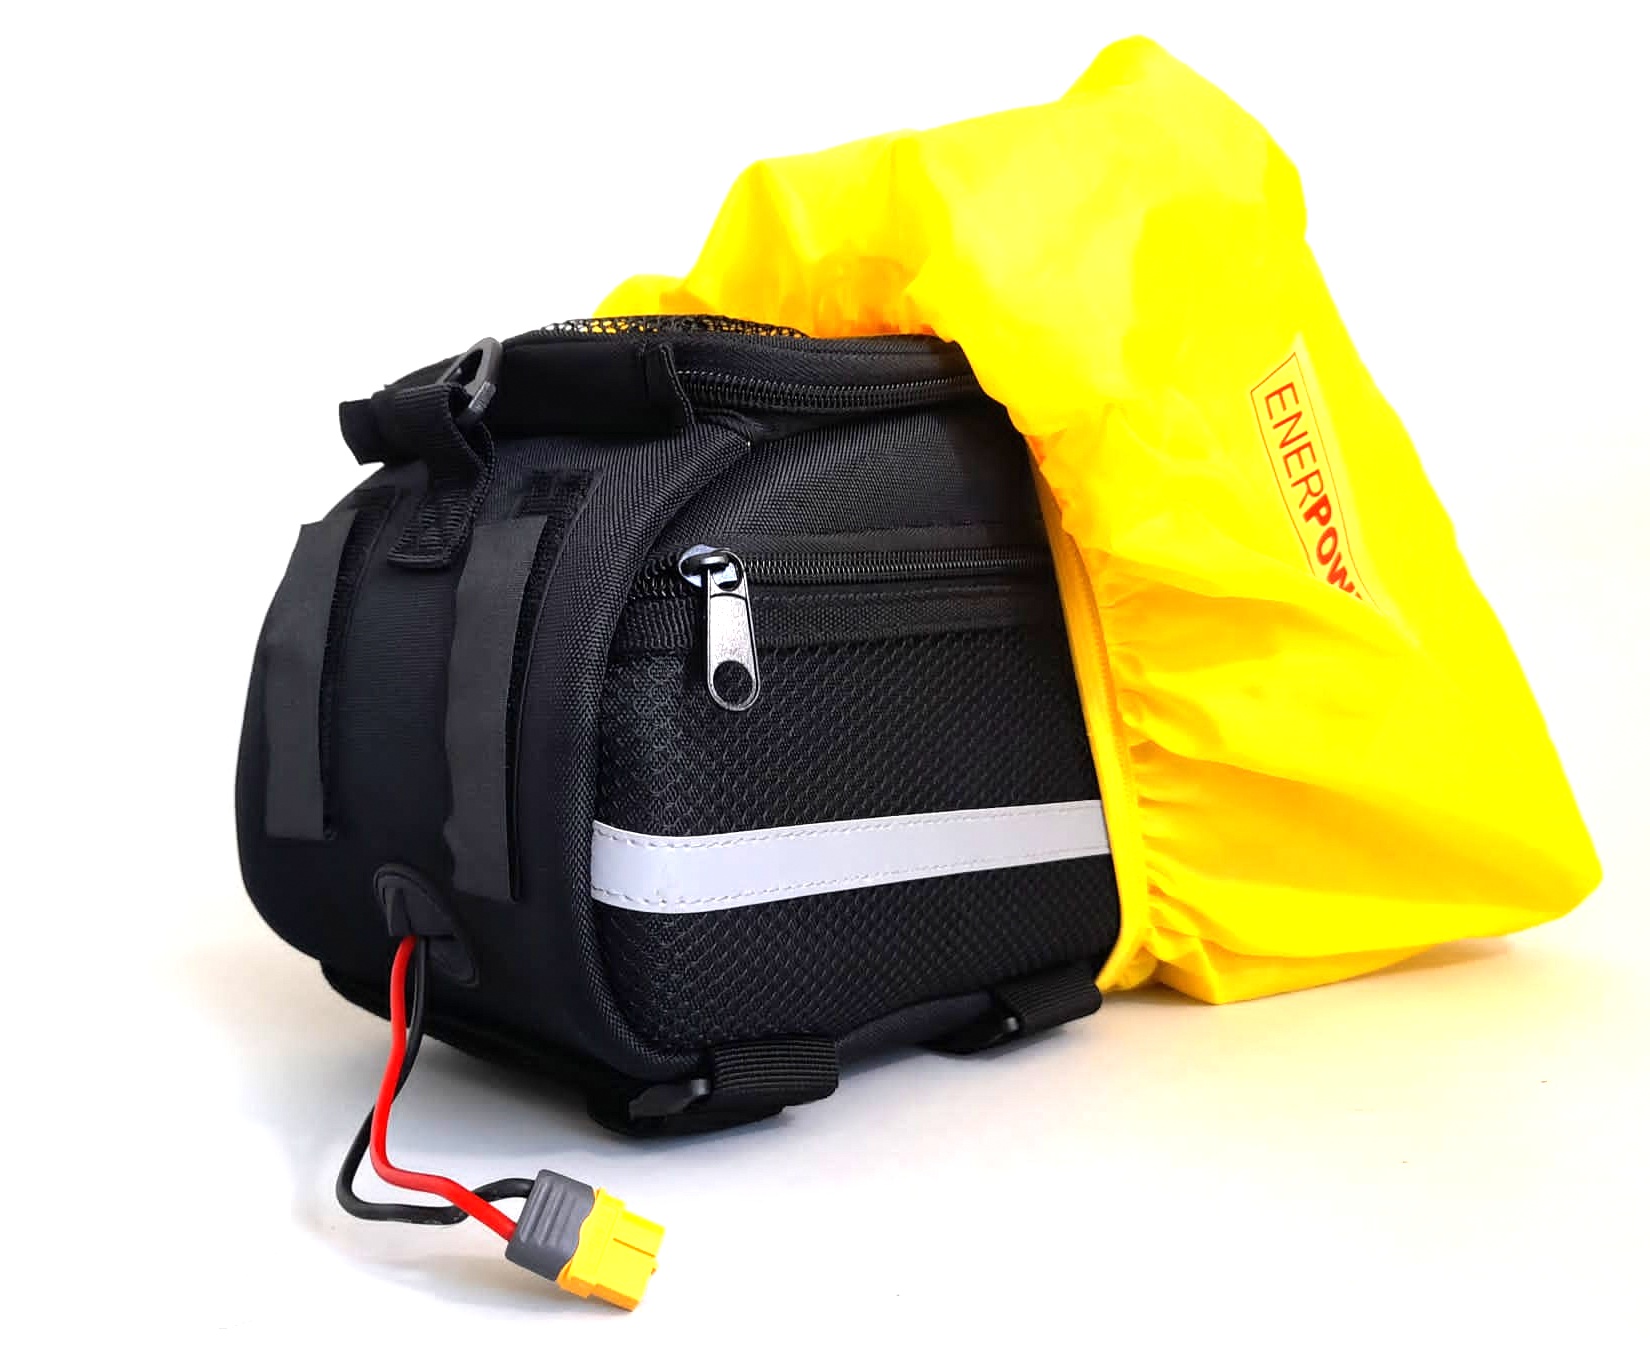 Enerpower Gepäckträger Tasche für Akkus BARAK 